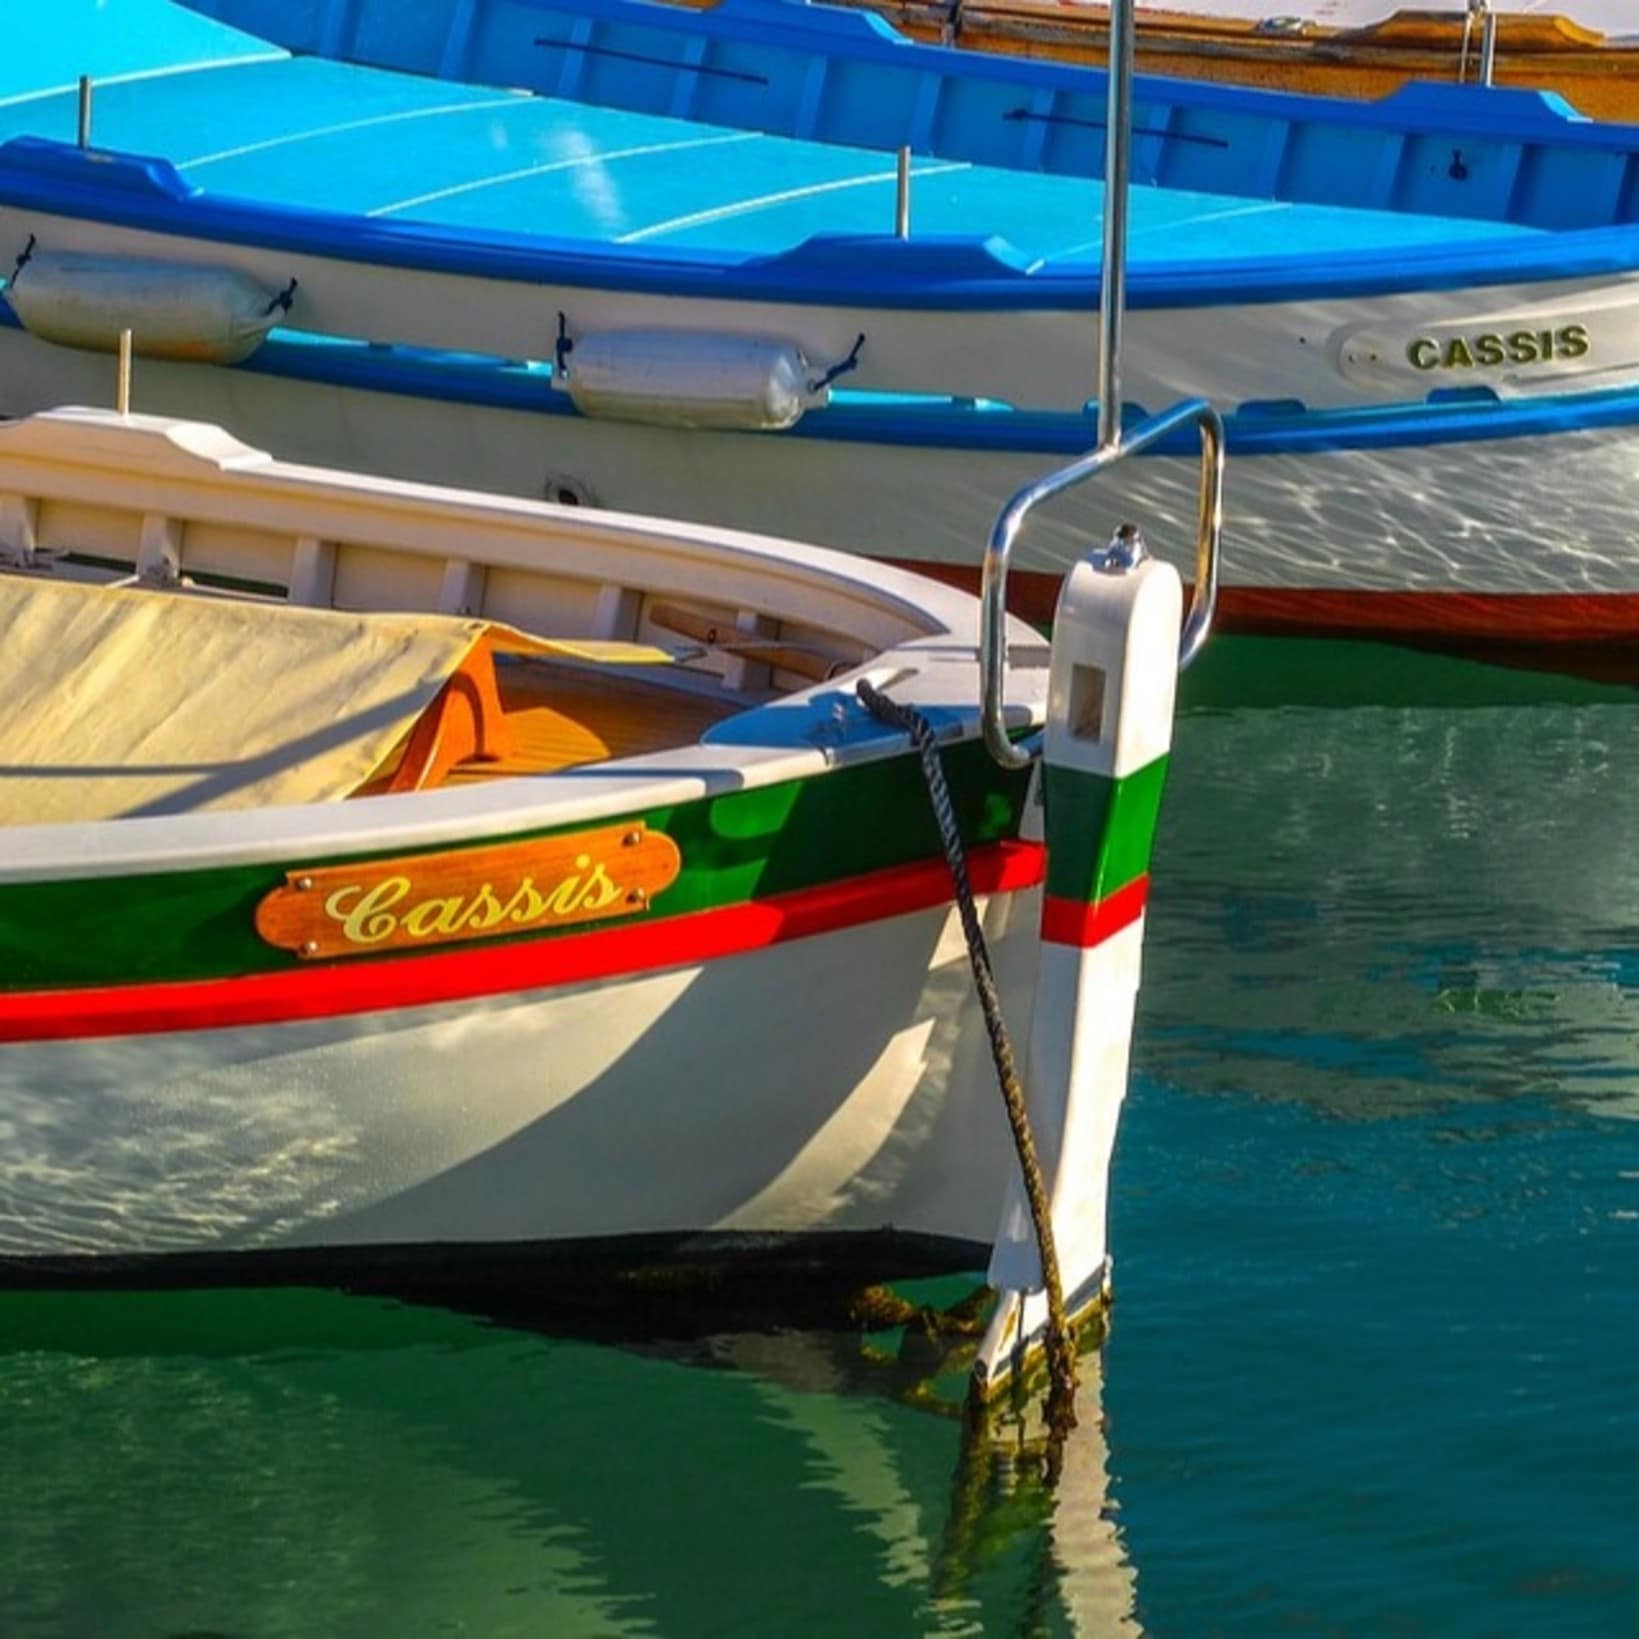 Bateaux de pêche, Cassis, mer, location vacances bord de mer méditerranée